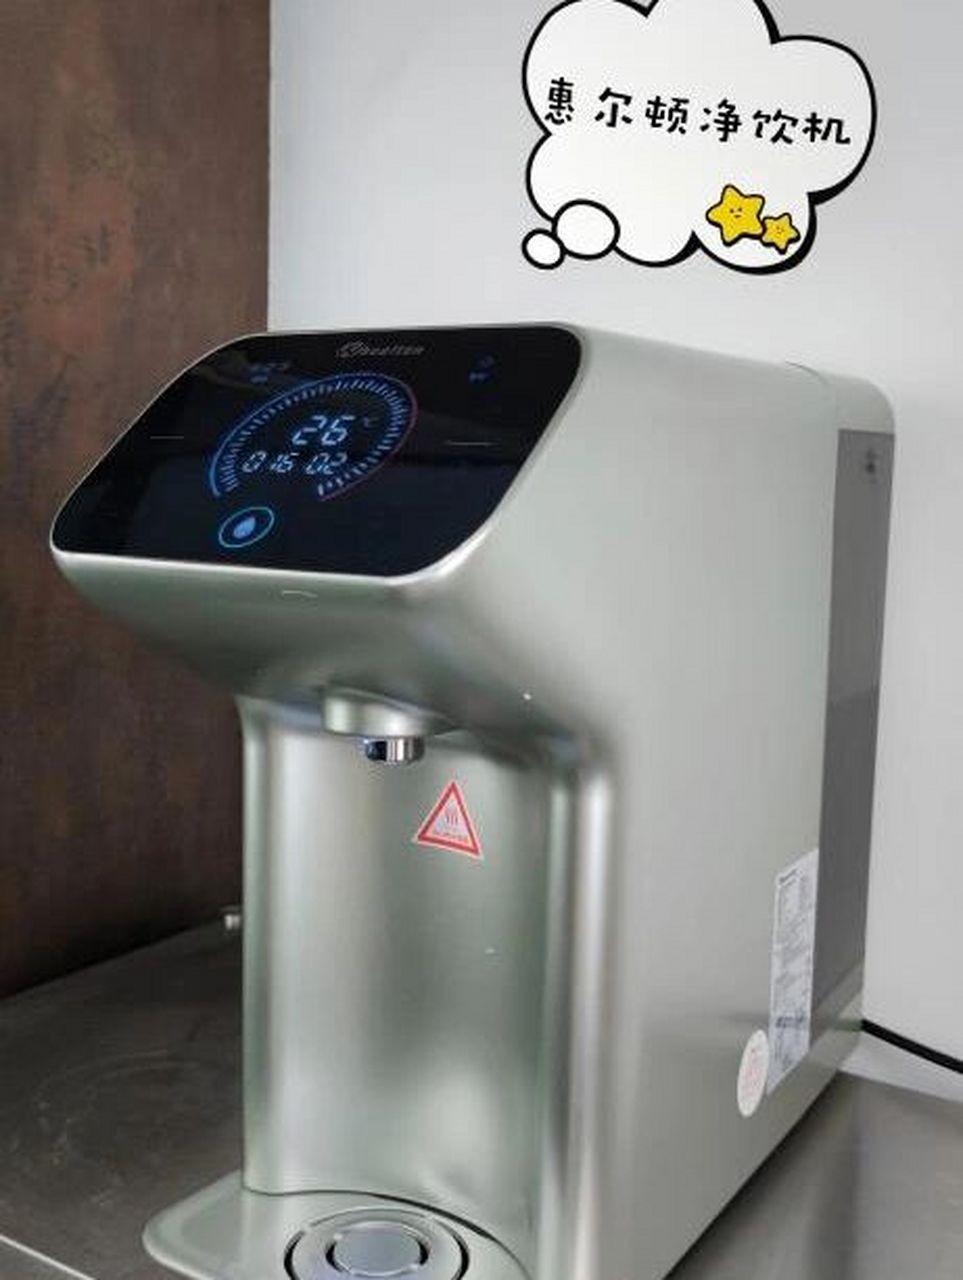 智能家电真香系列-惠尔顿净水器wht-tro06 买了这个净水器—惠尔顿